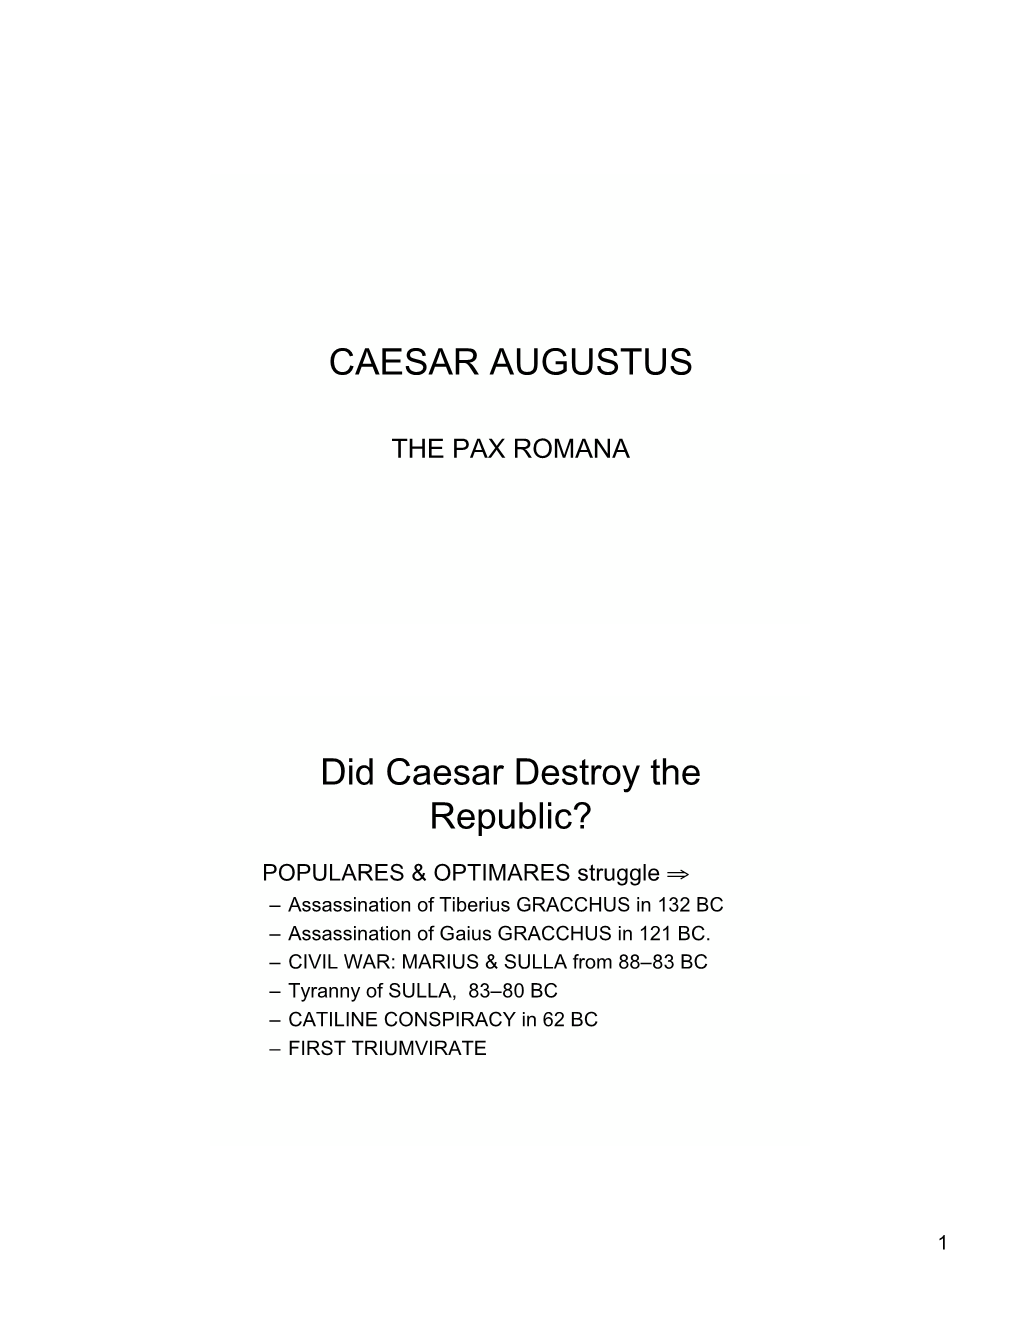 CAESAR AUGUSTUS Did Caesar Destroy the Republic?